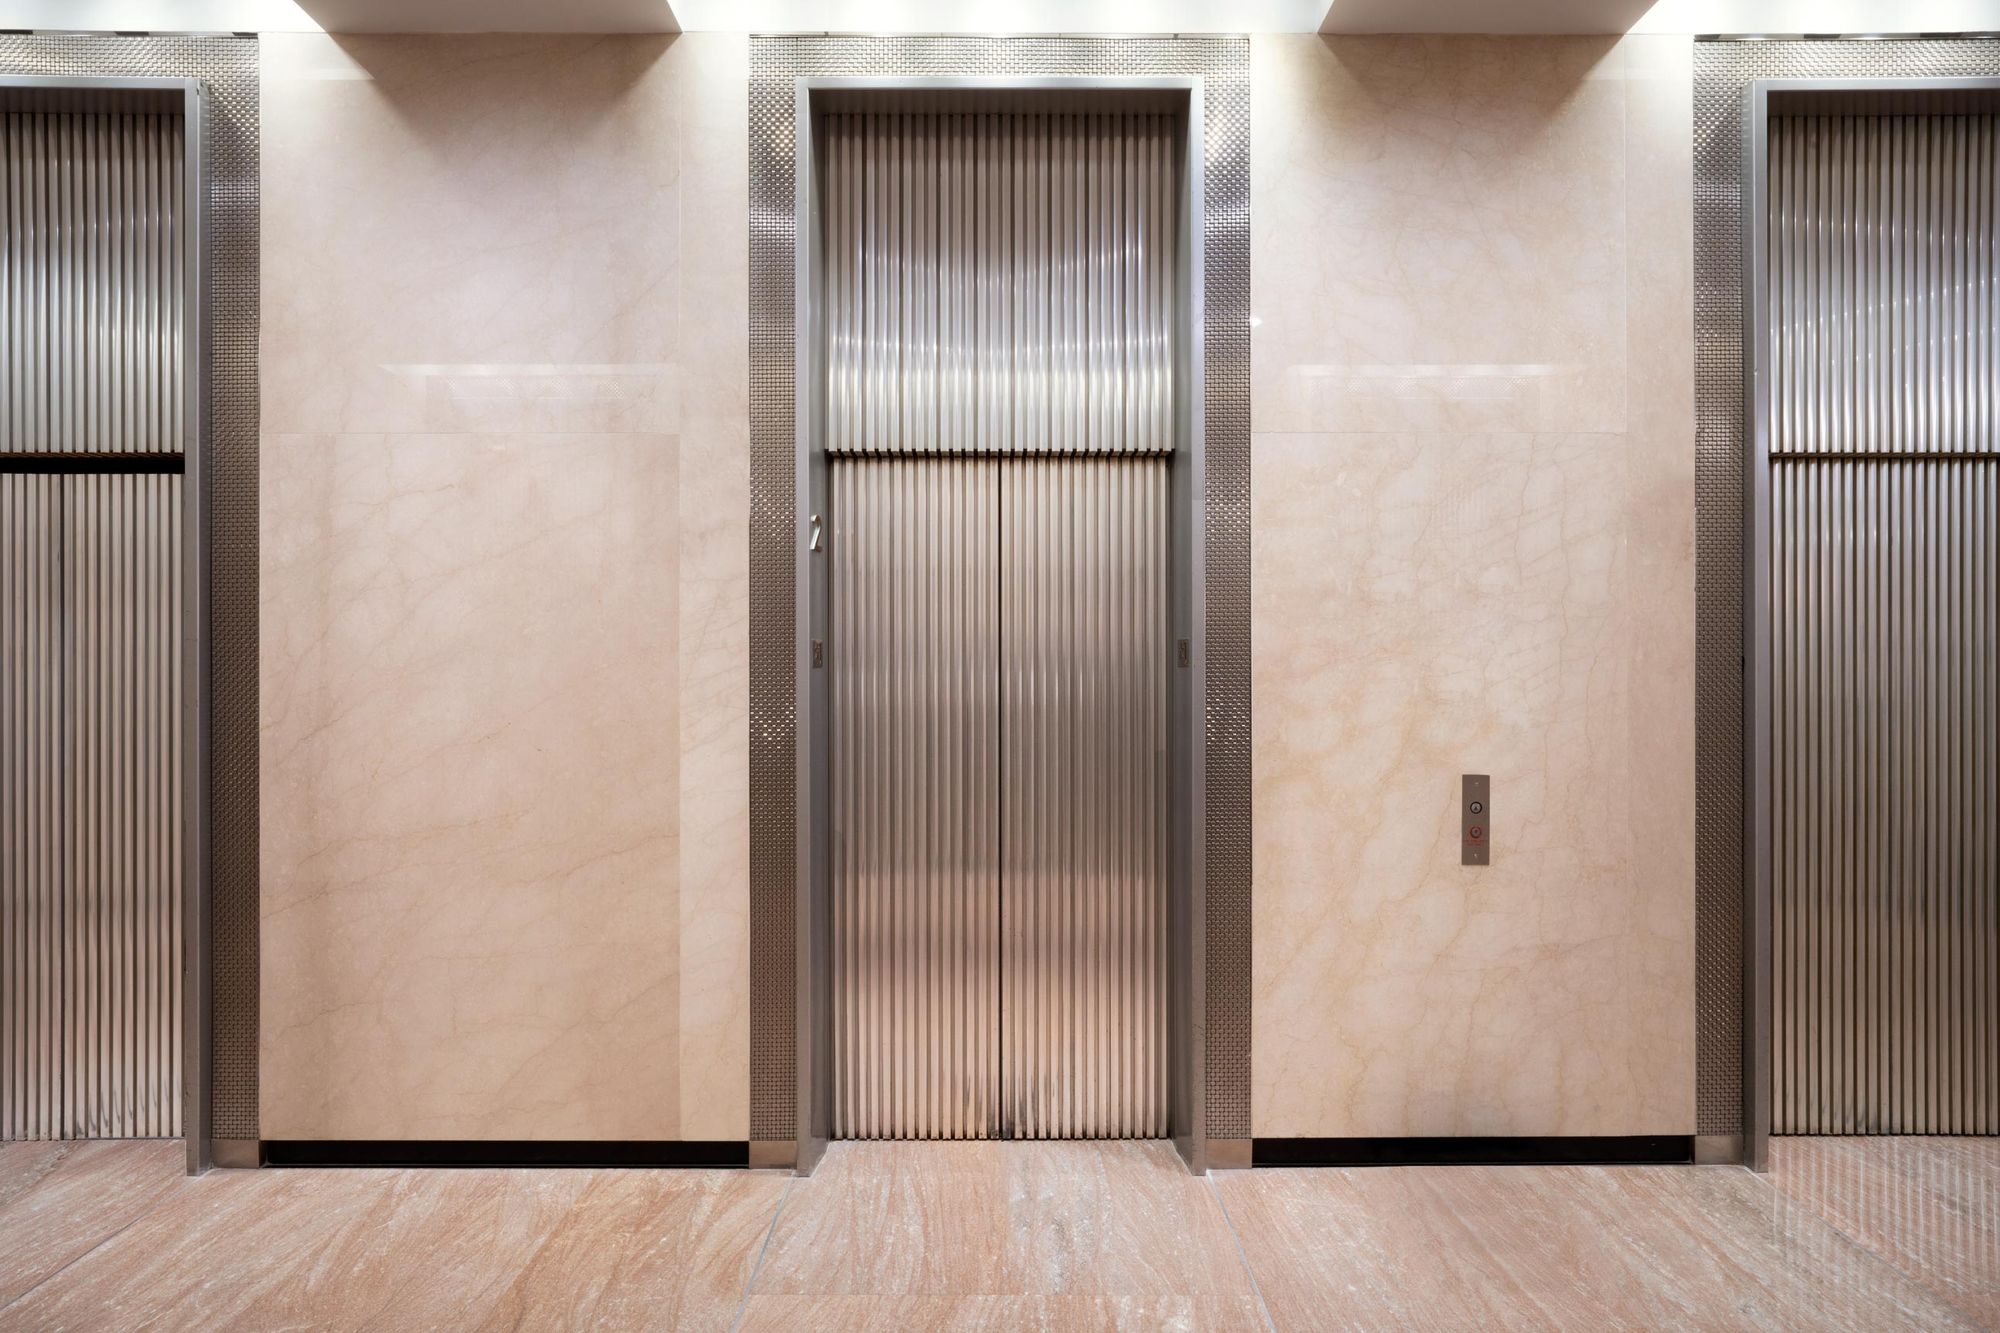 99 Park Avenue’s elevator